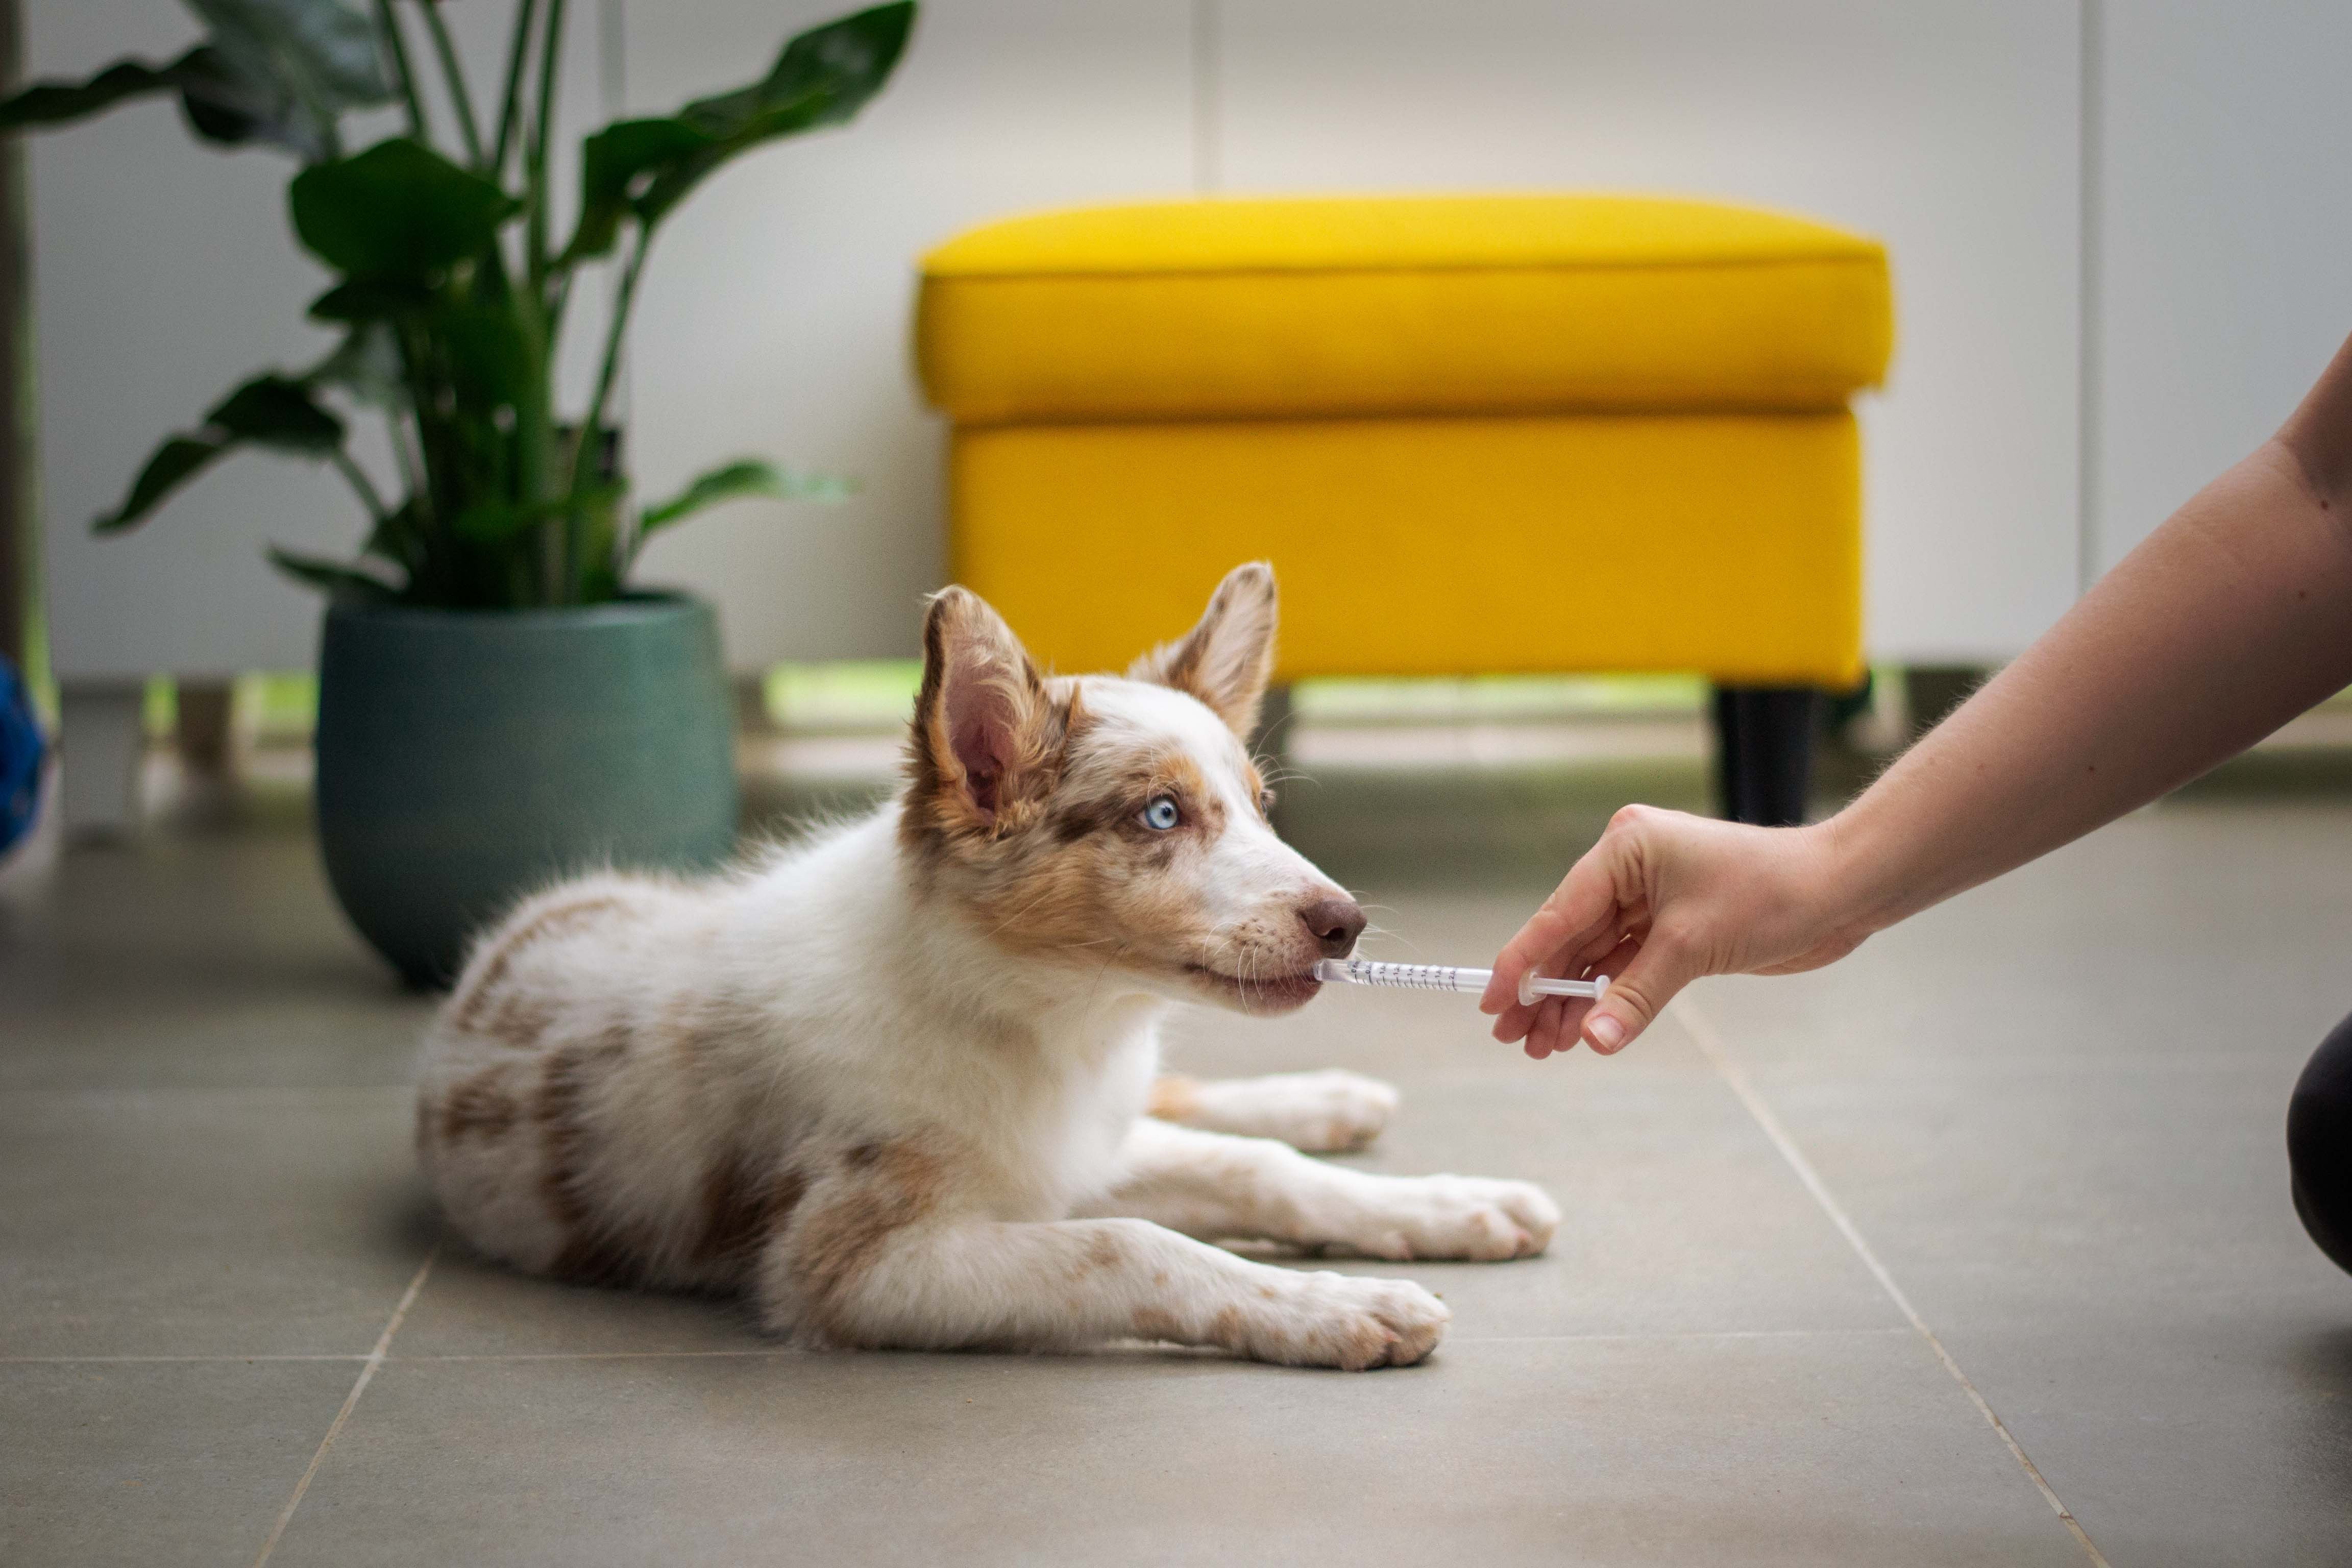 La importancia de la prevención: productos veterinarios para mantener a tu mascota saludable